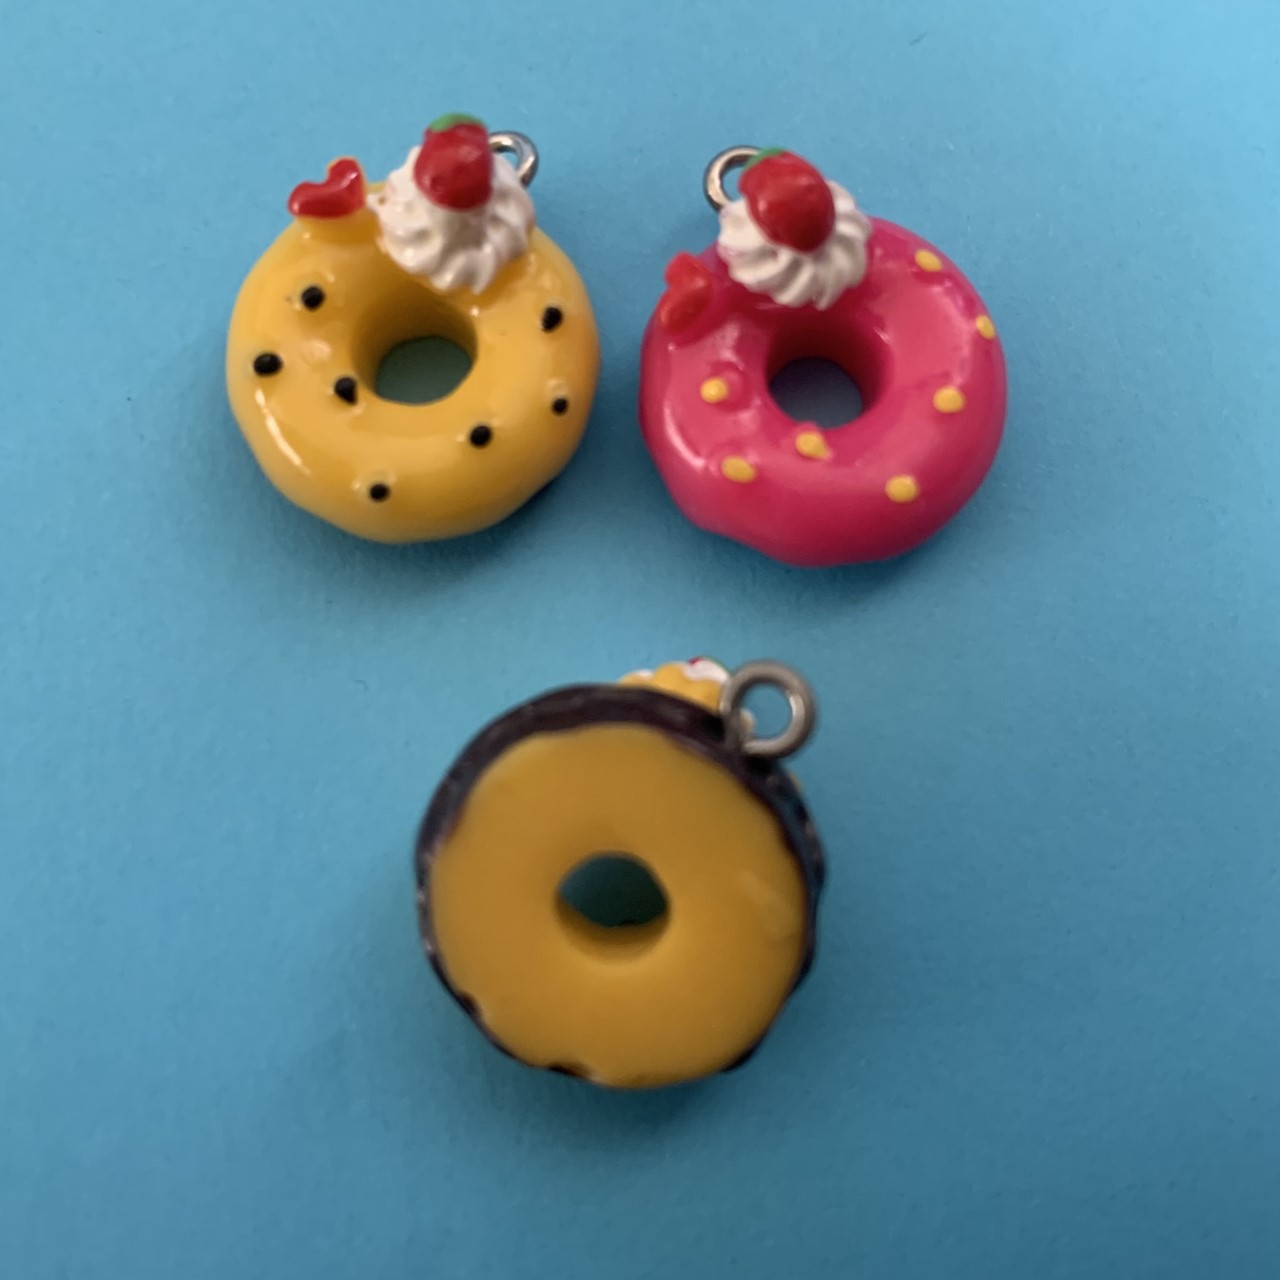 Donut met aardbei in twee kleuren